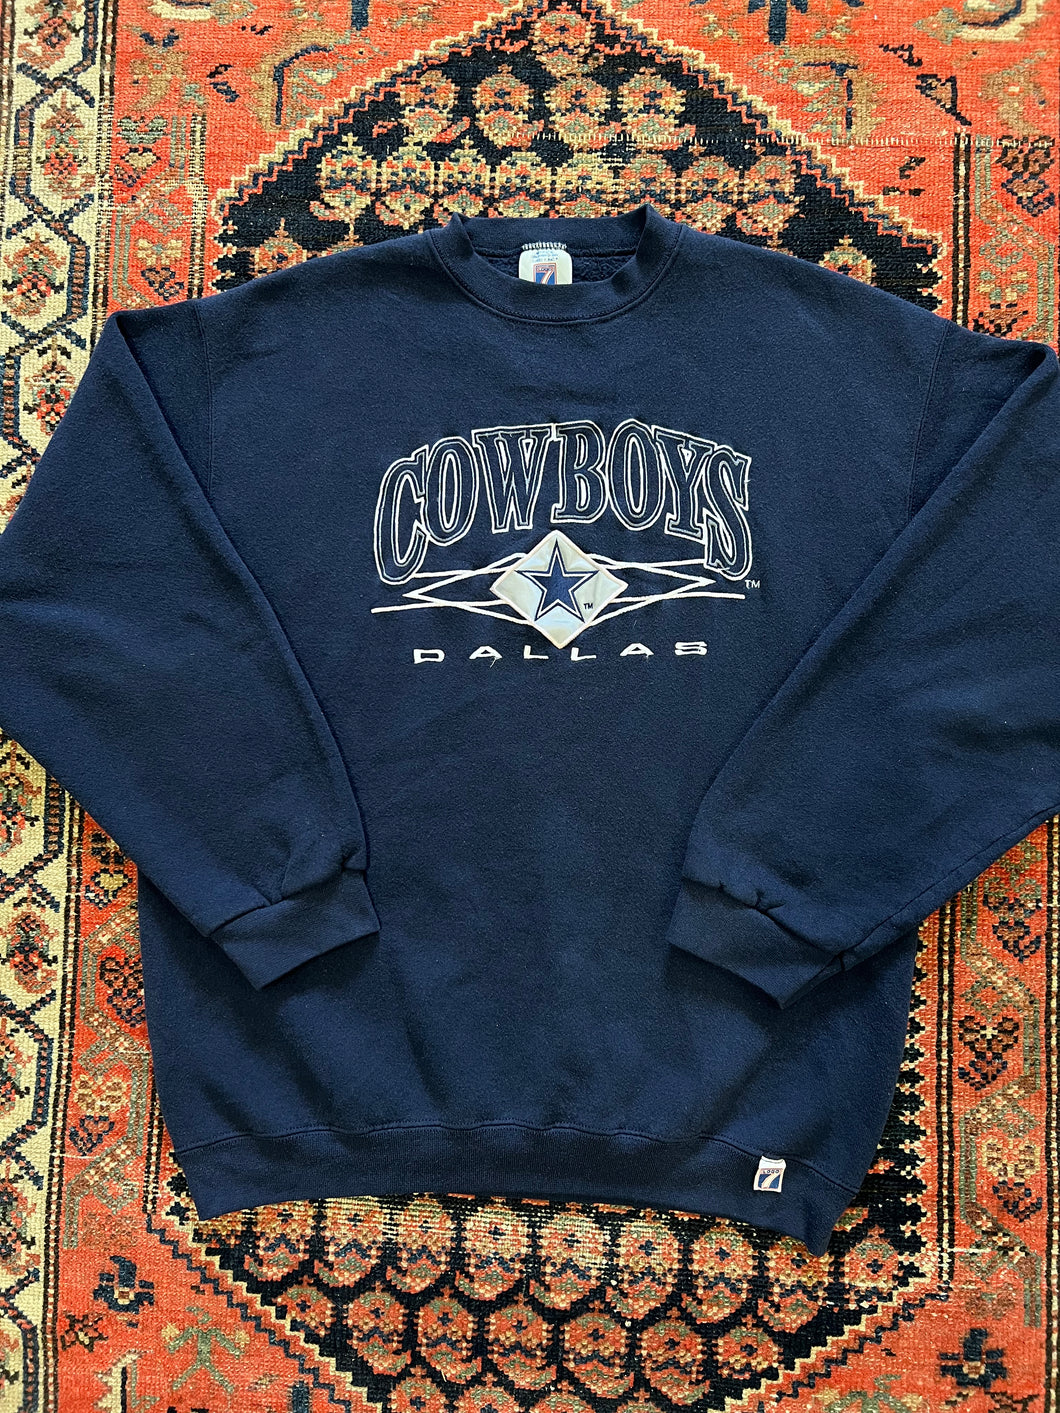 Vintage Dallas Cowboys Crew-Neck Sweatshirt